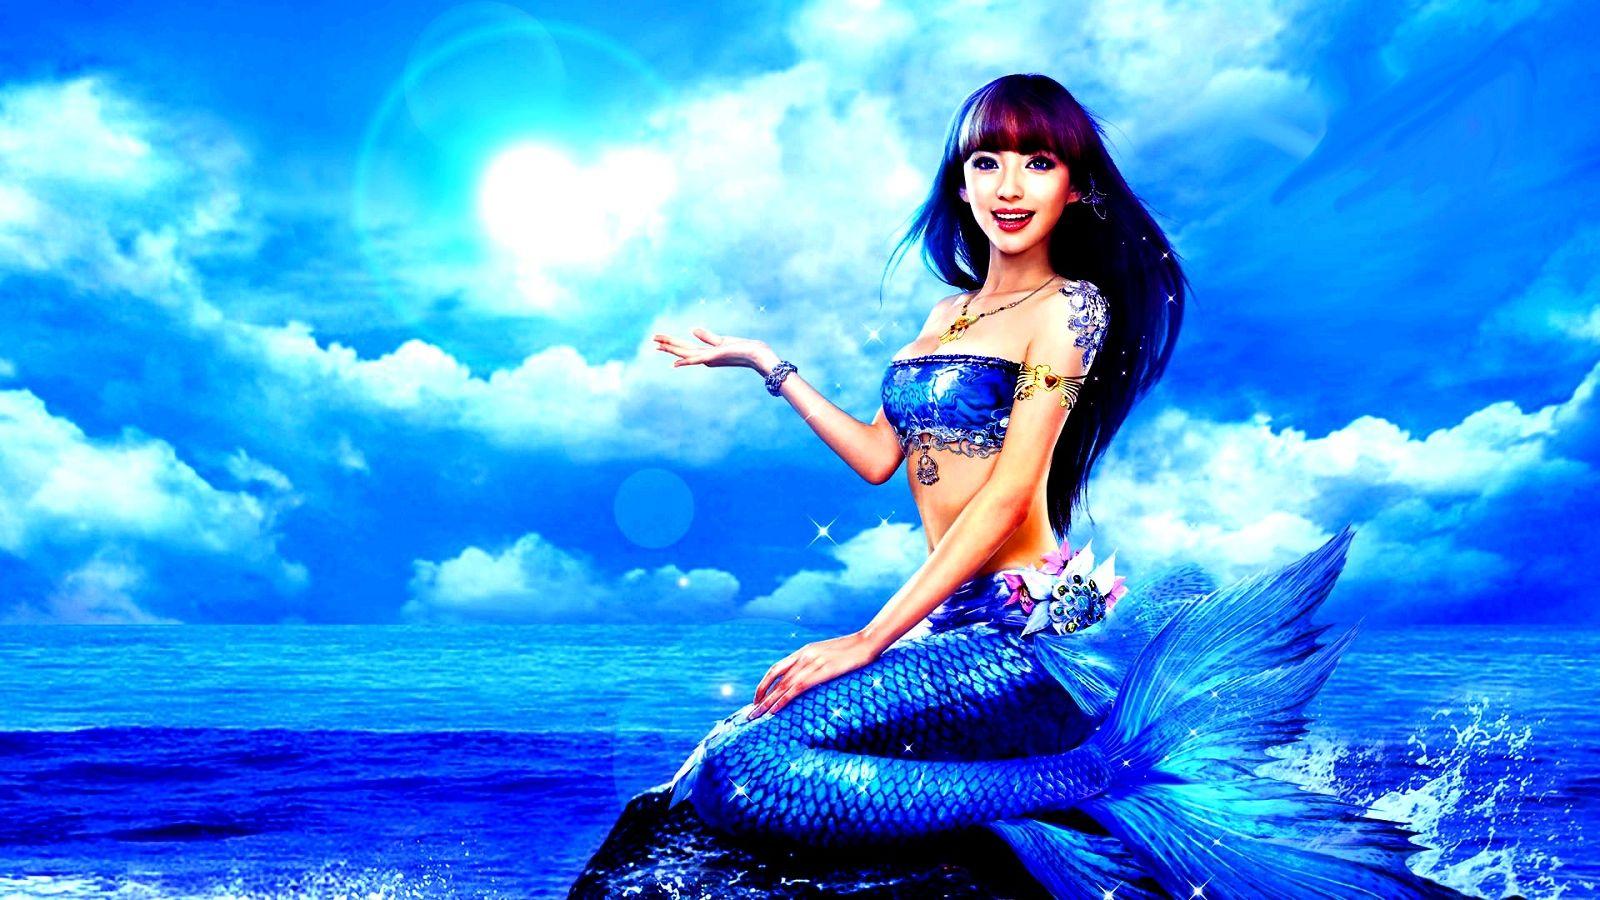 Blue Mermaid. Mermaid picture, Mermaid wallpaper, Mermaid